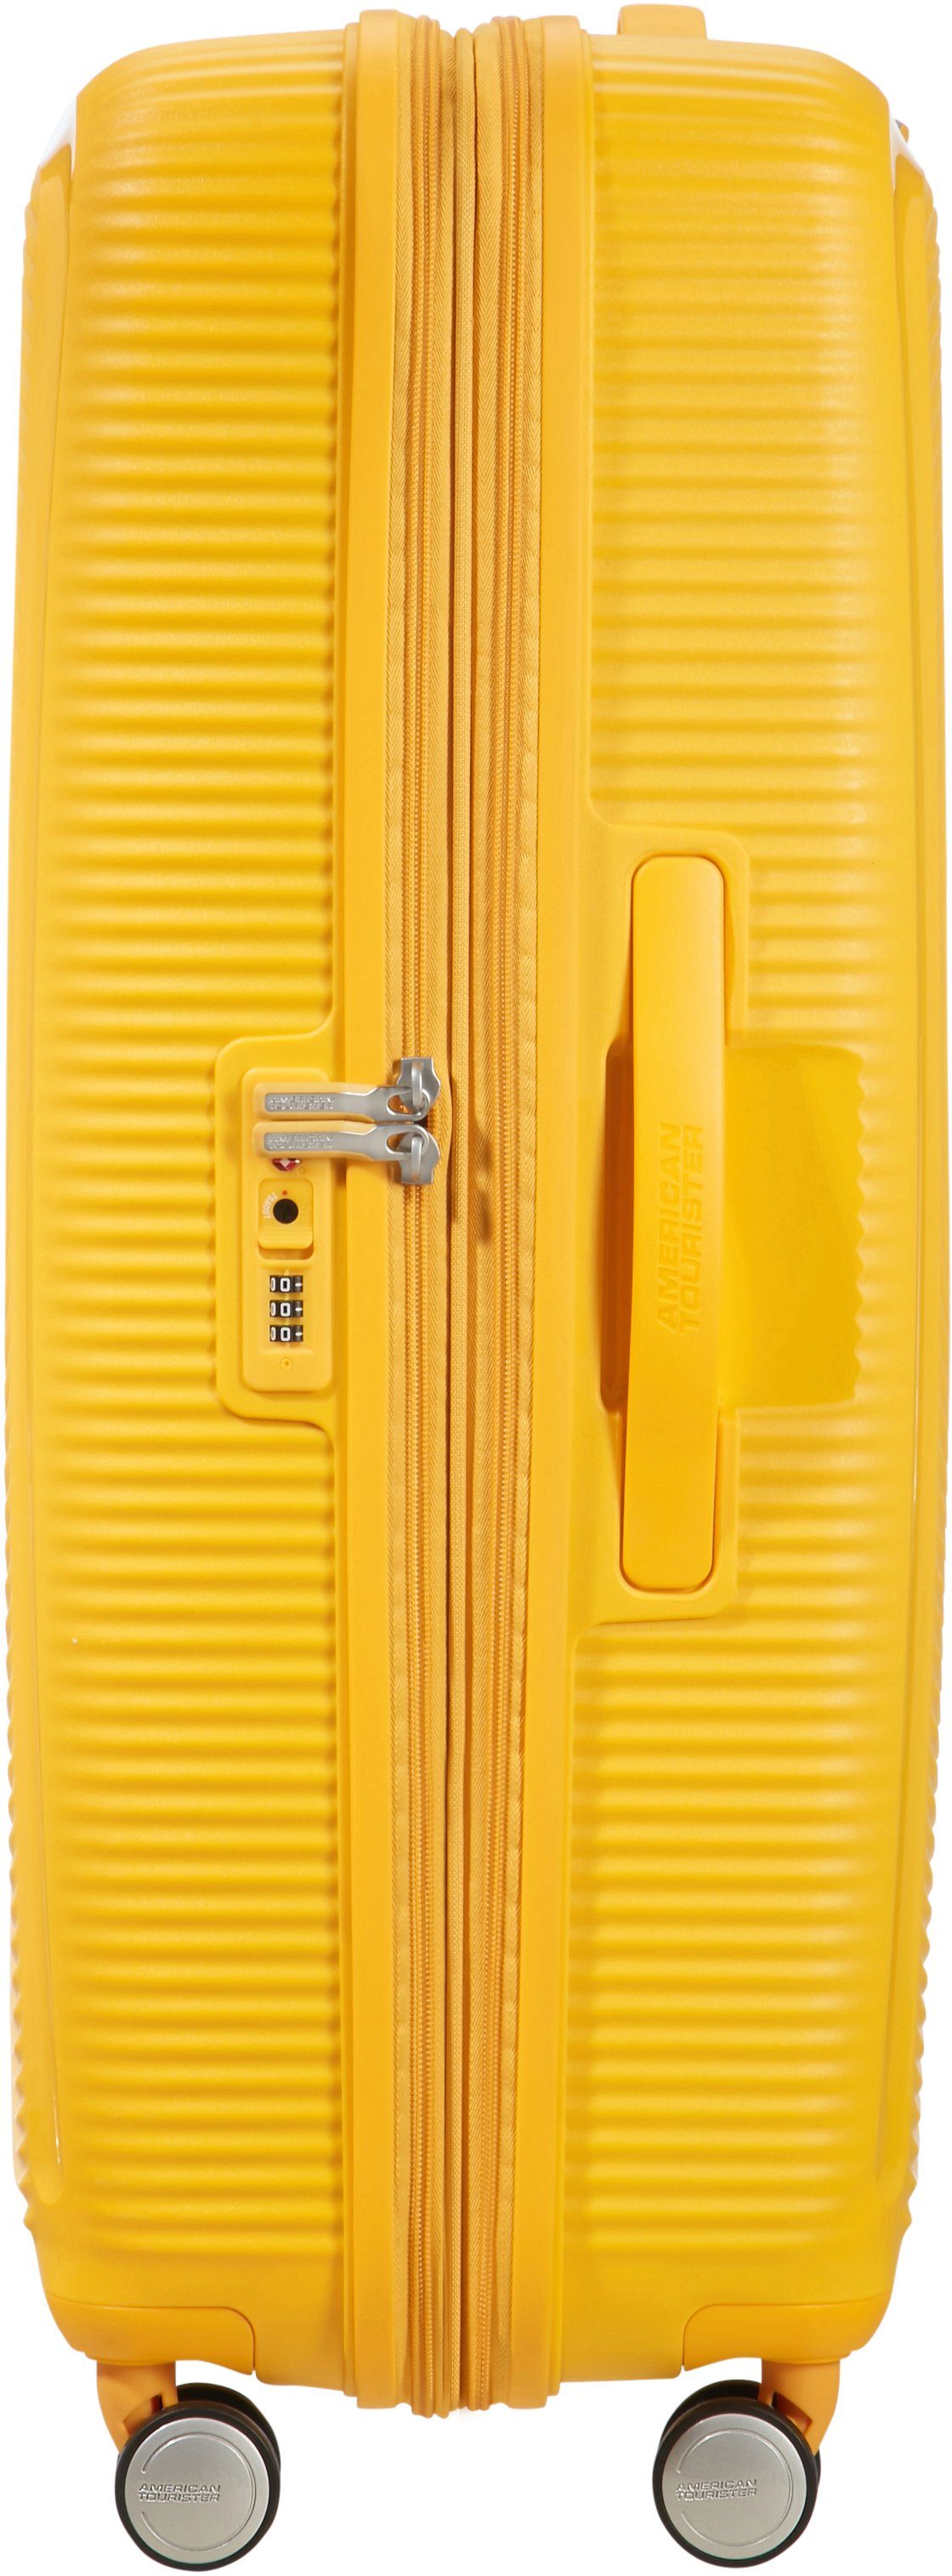 Tourister® Yellow Rollen, Volumenerweiterung 4 Golden Hartschalen-Trolley mit 77 cm, Soundbox, American